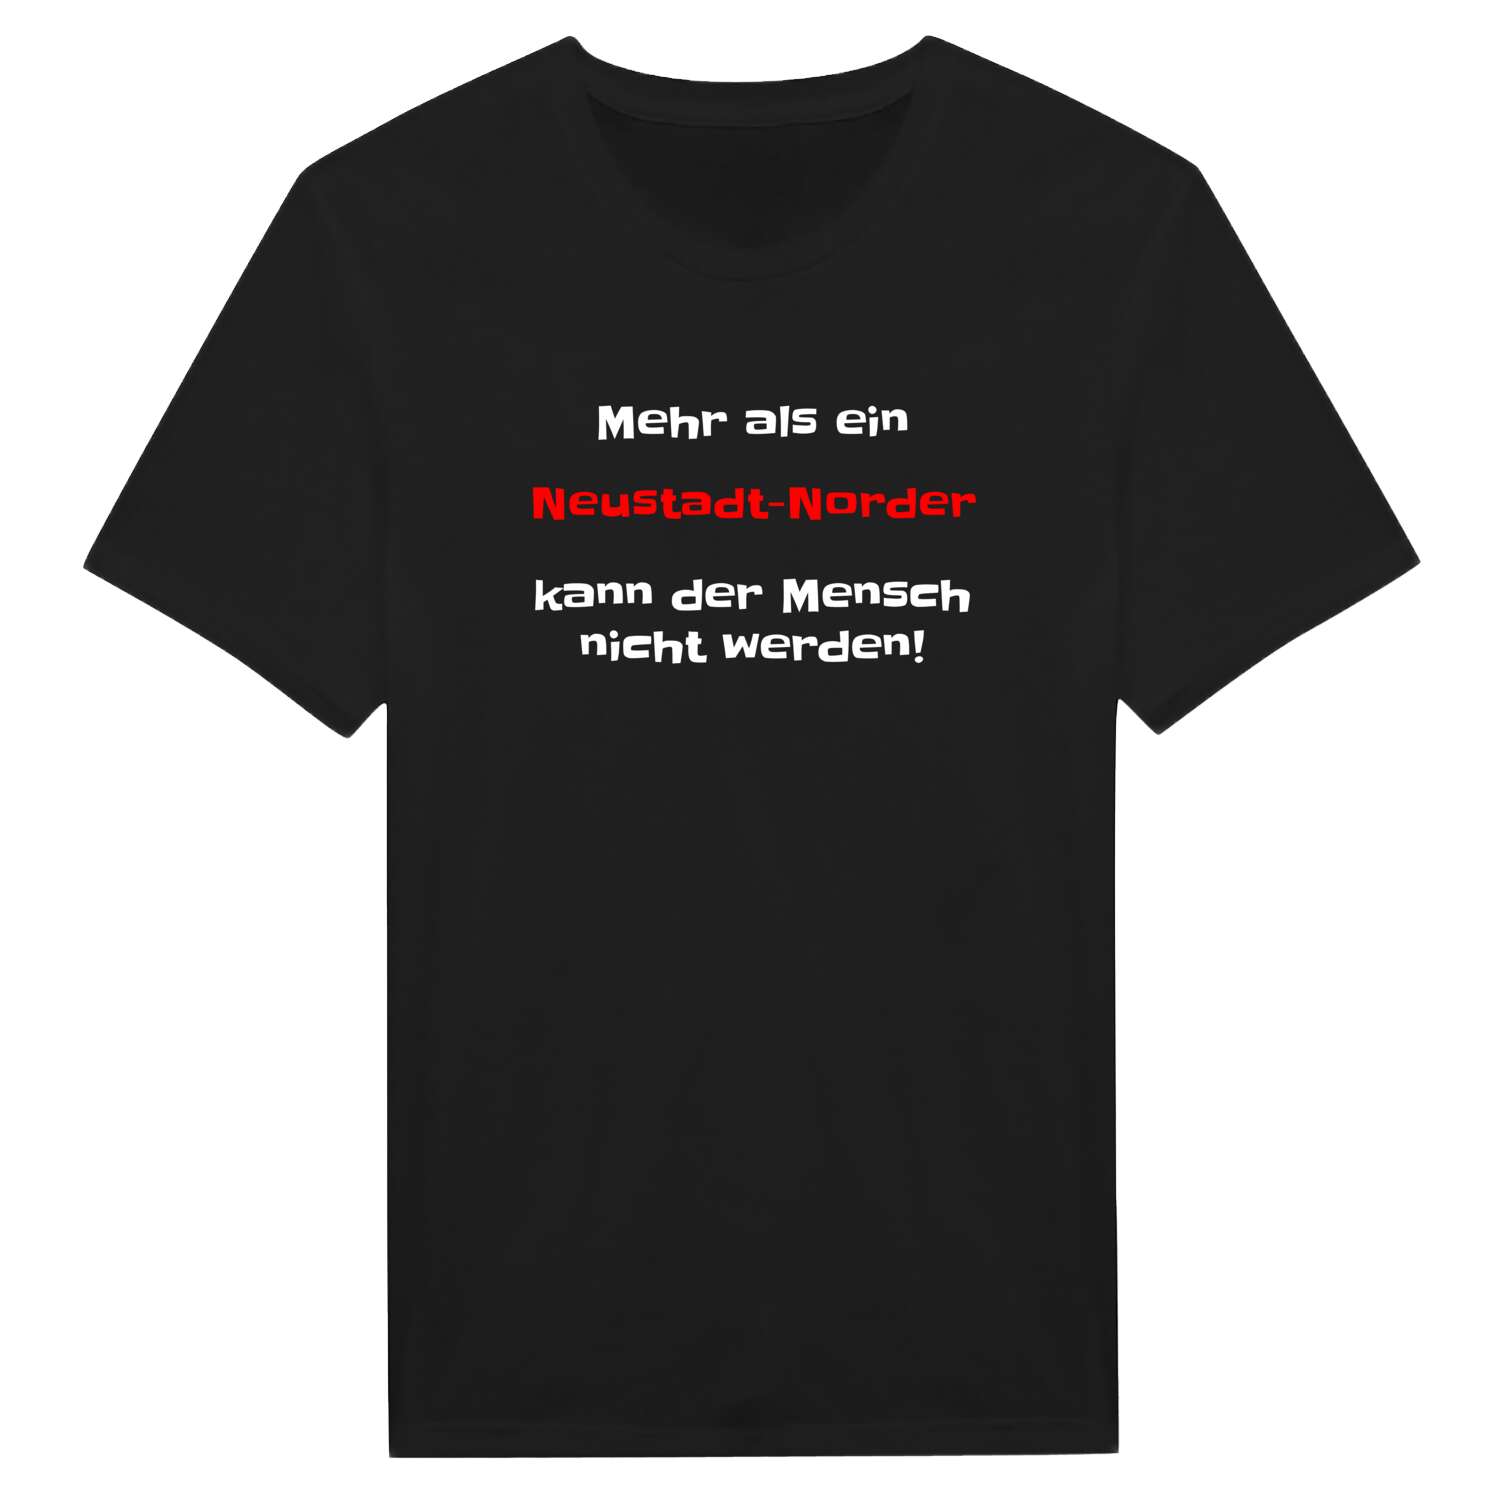 Neustadt-Nord T-Shirt »Mehr als ein«